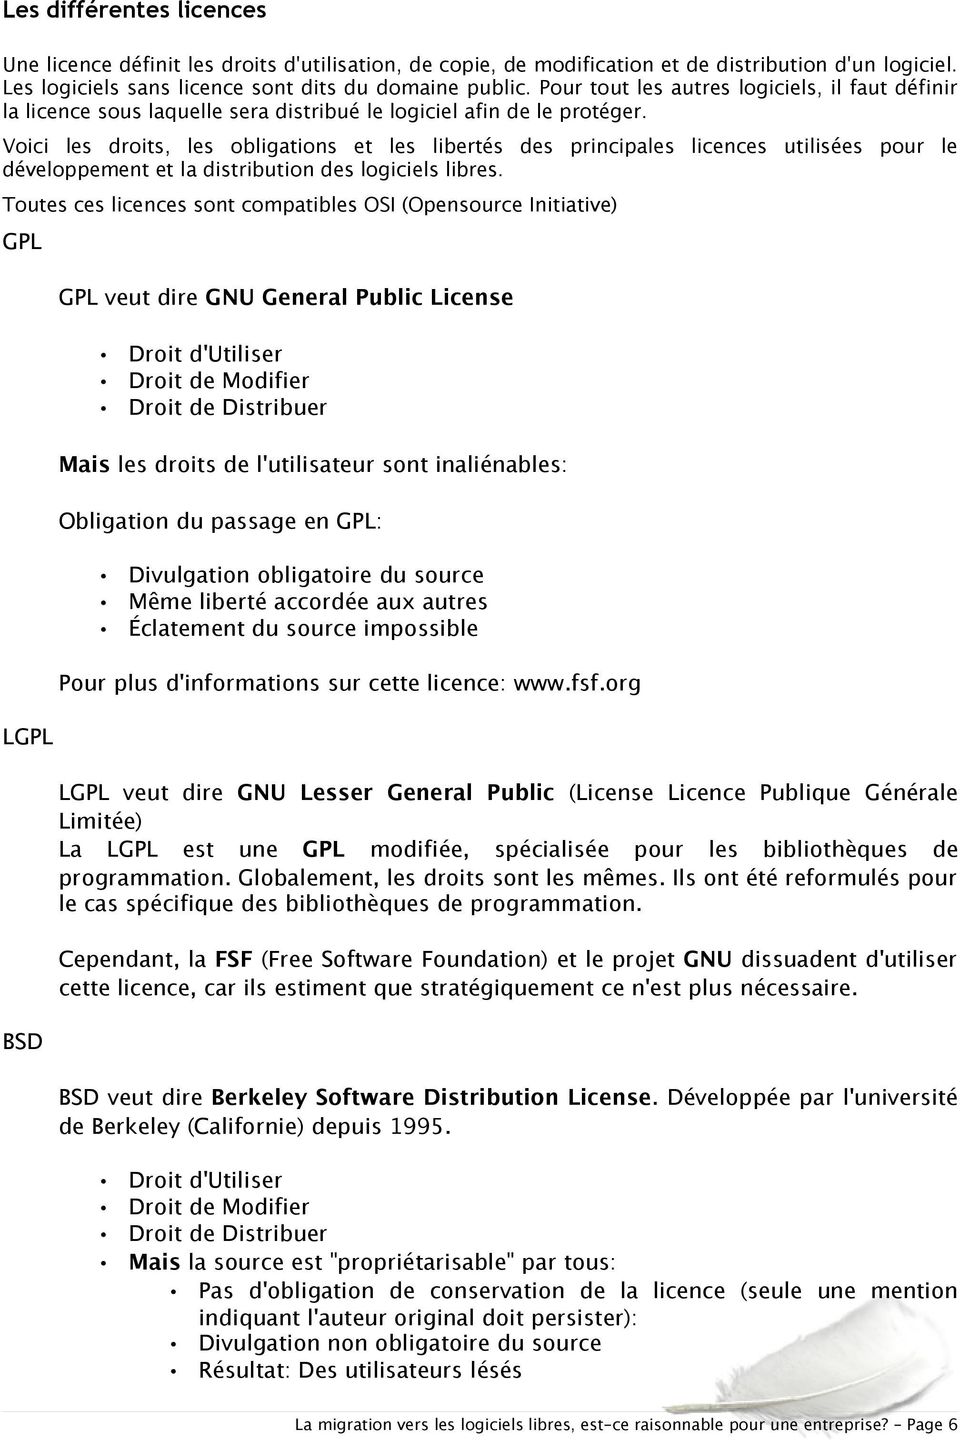 Voici les droits, les obligations et les libertés des principales licences utilisées pour le développement et la distribution des logiciels libres.